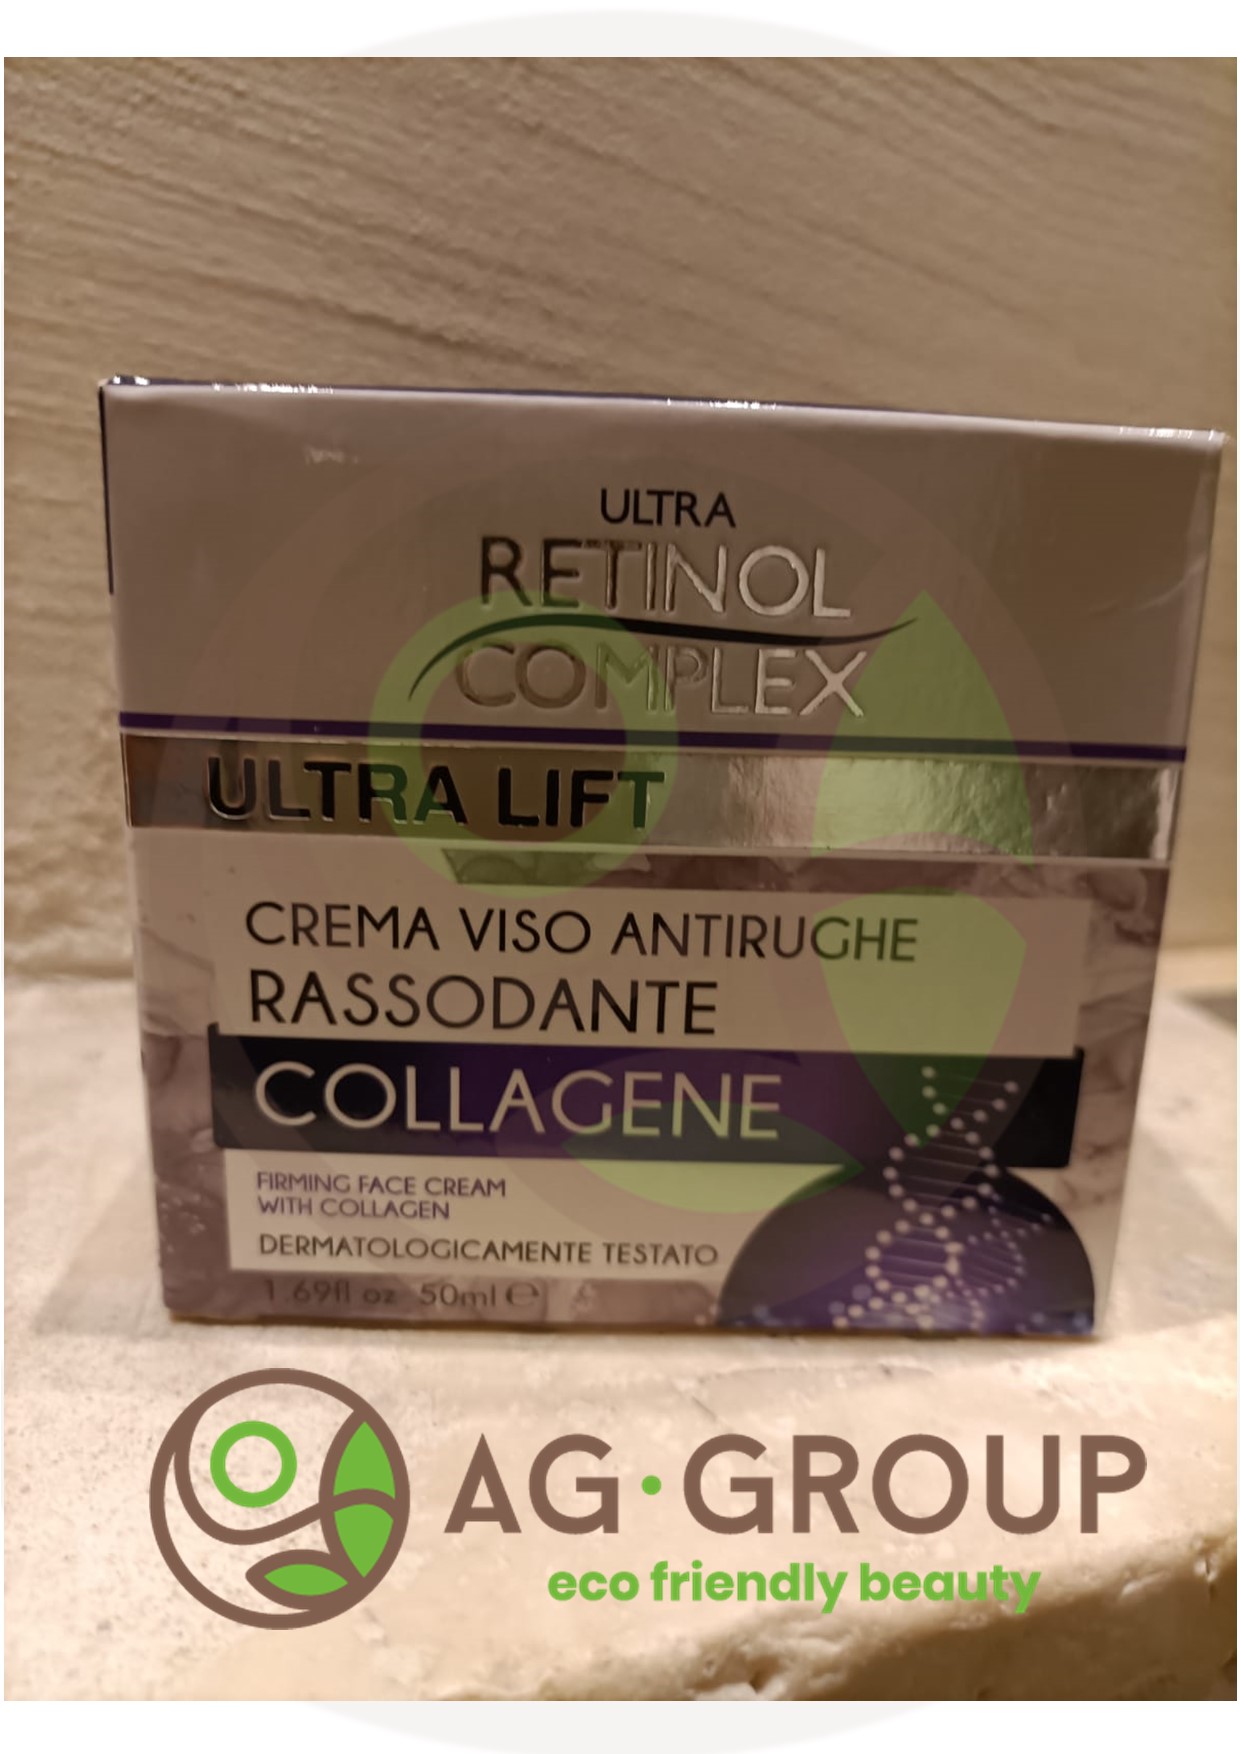 Featured image for “Crema viso collagene - antirughe 50ml”